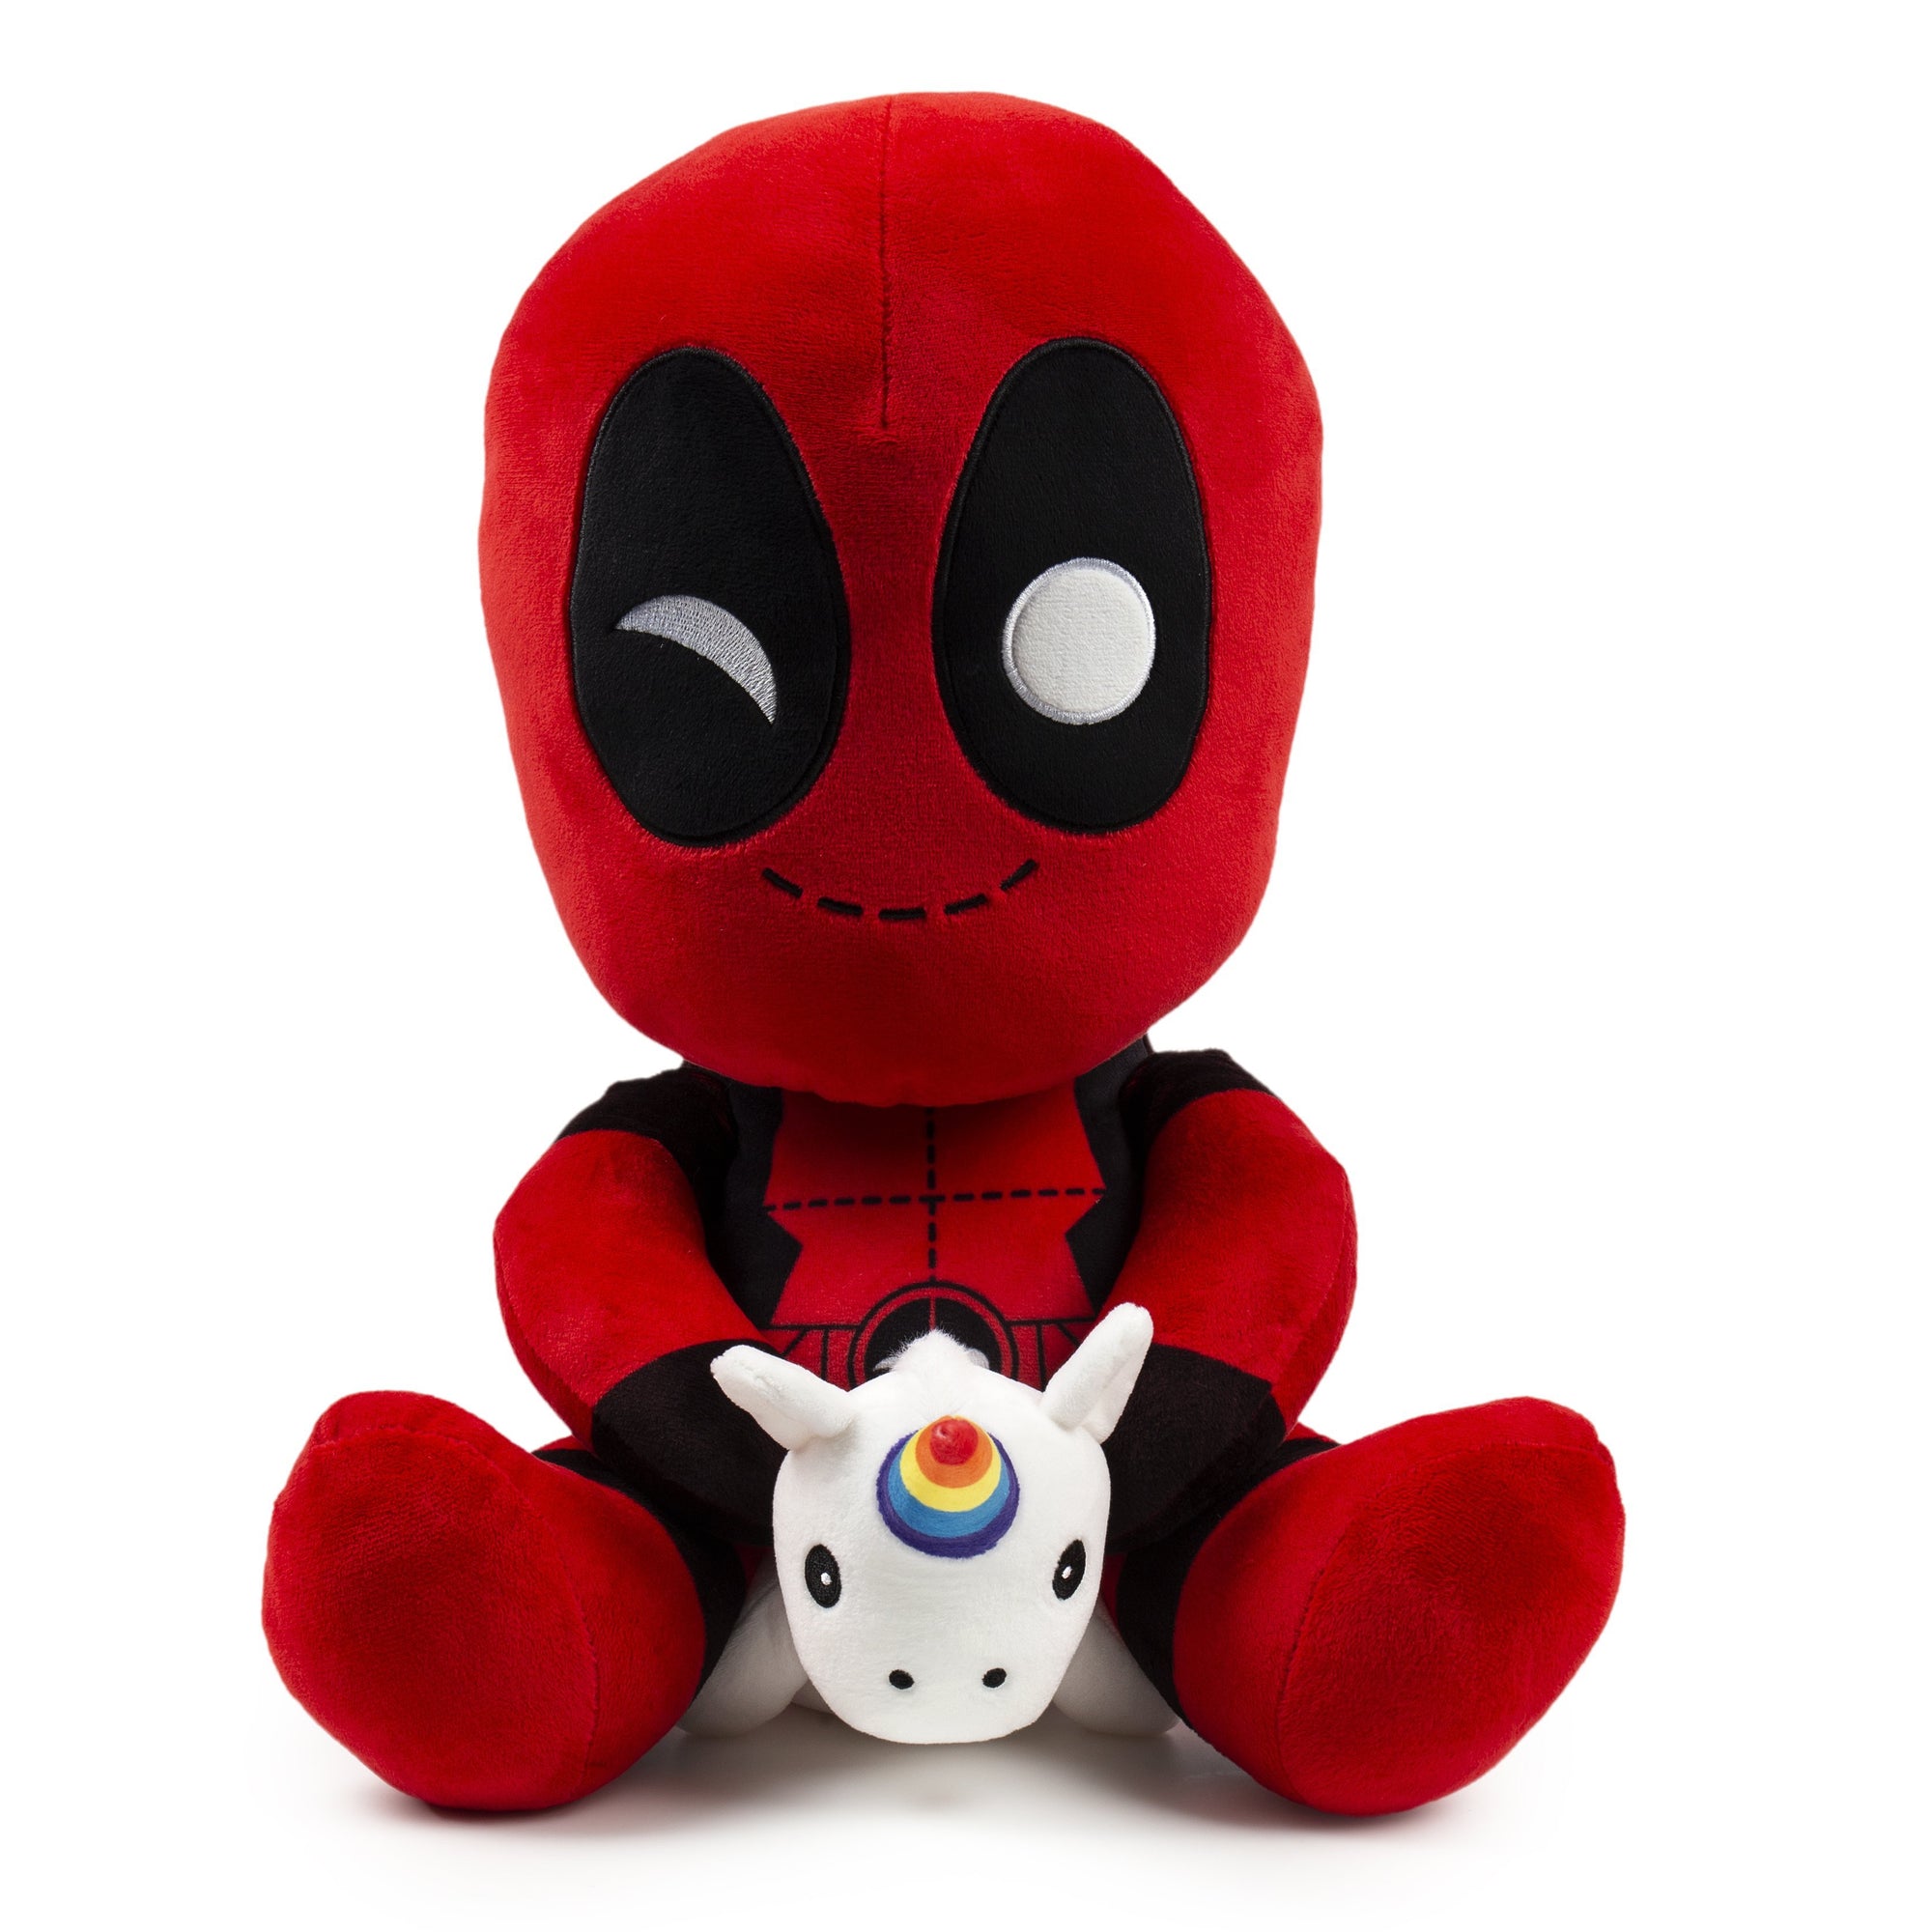 HugMe Vibrating Plush Toys by Kidrobot